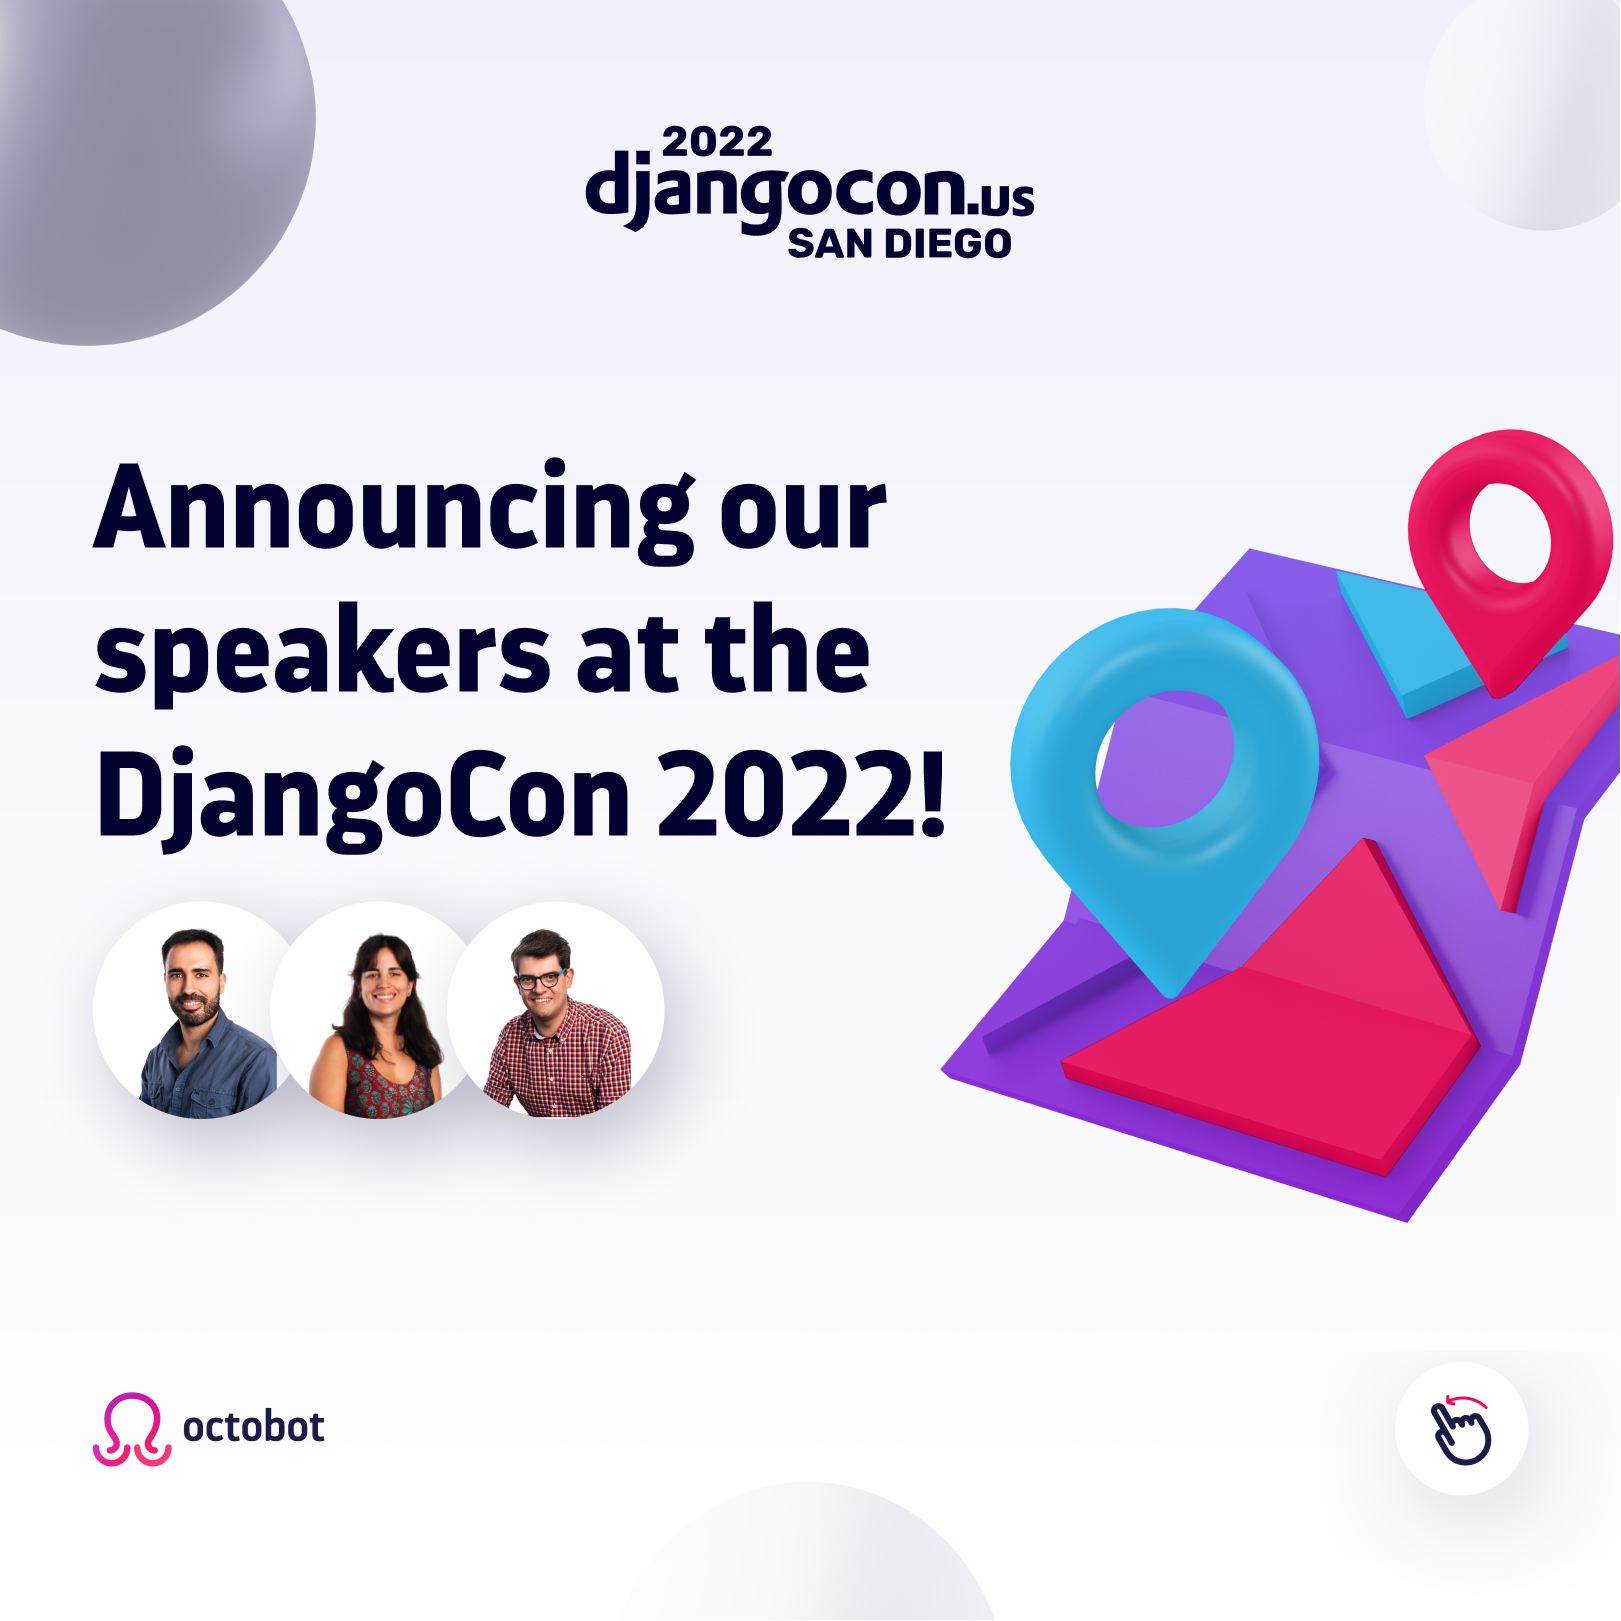 Octobot at DjangoCon 2022